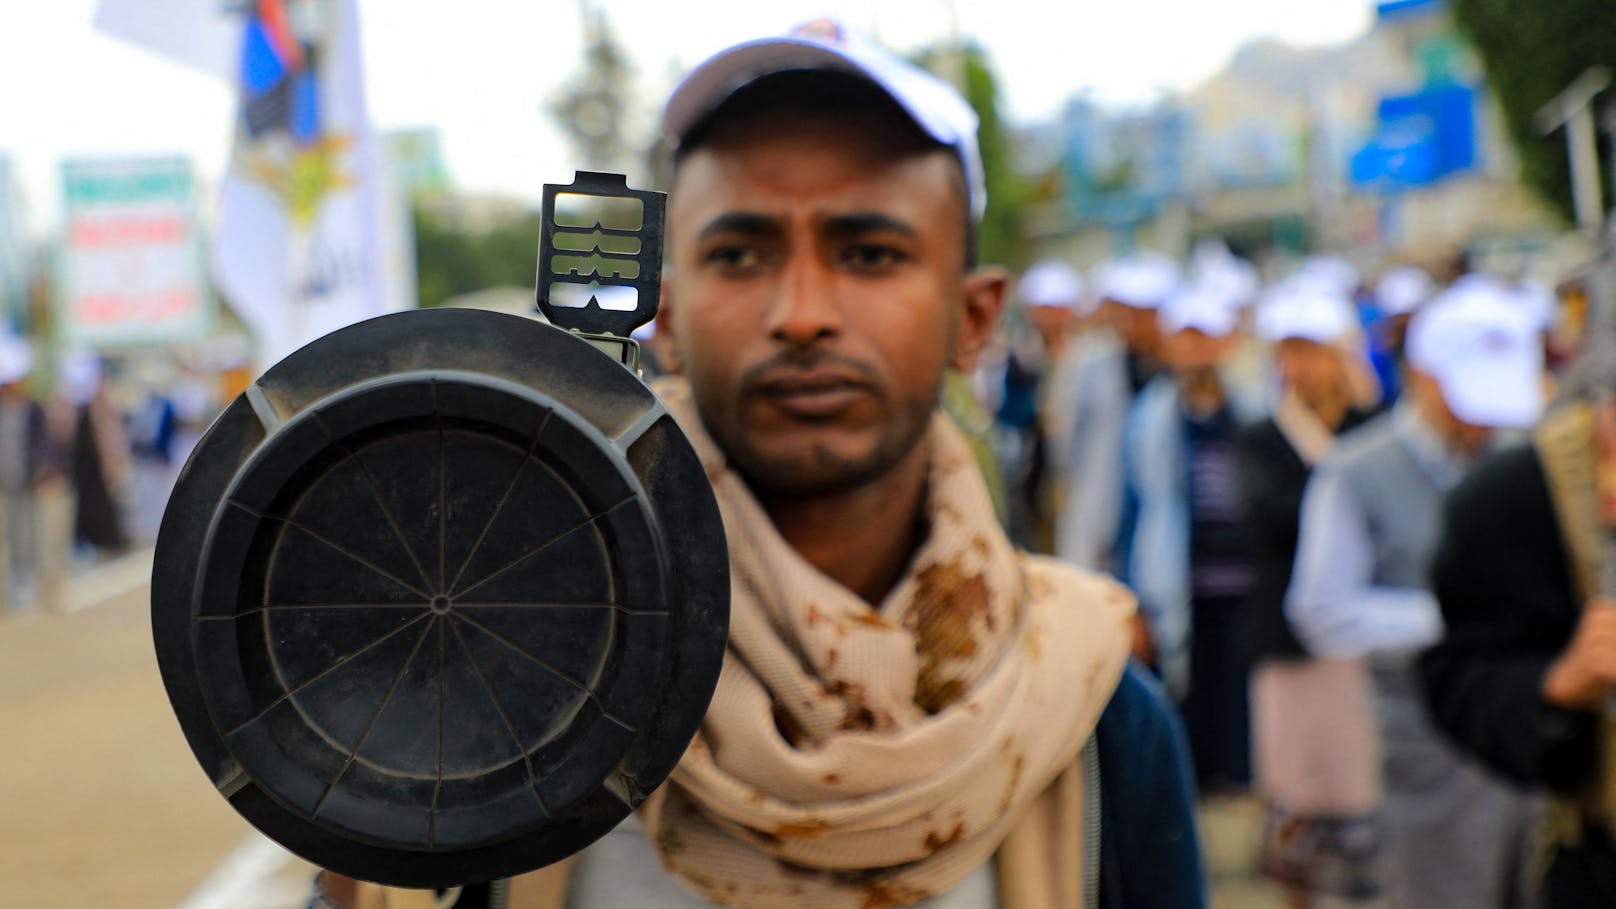 Kämpfen Huthi-Rebellen mit "Made in Austria"-Gewehren?